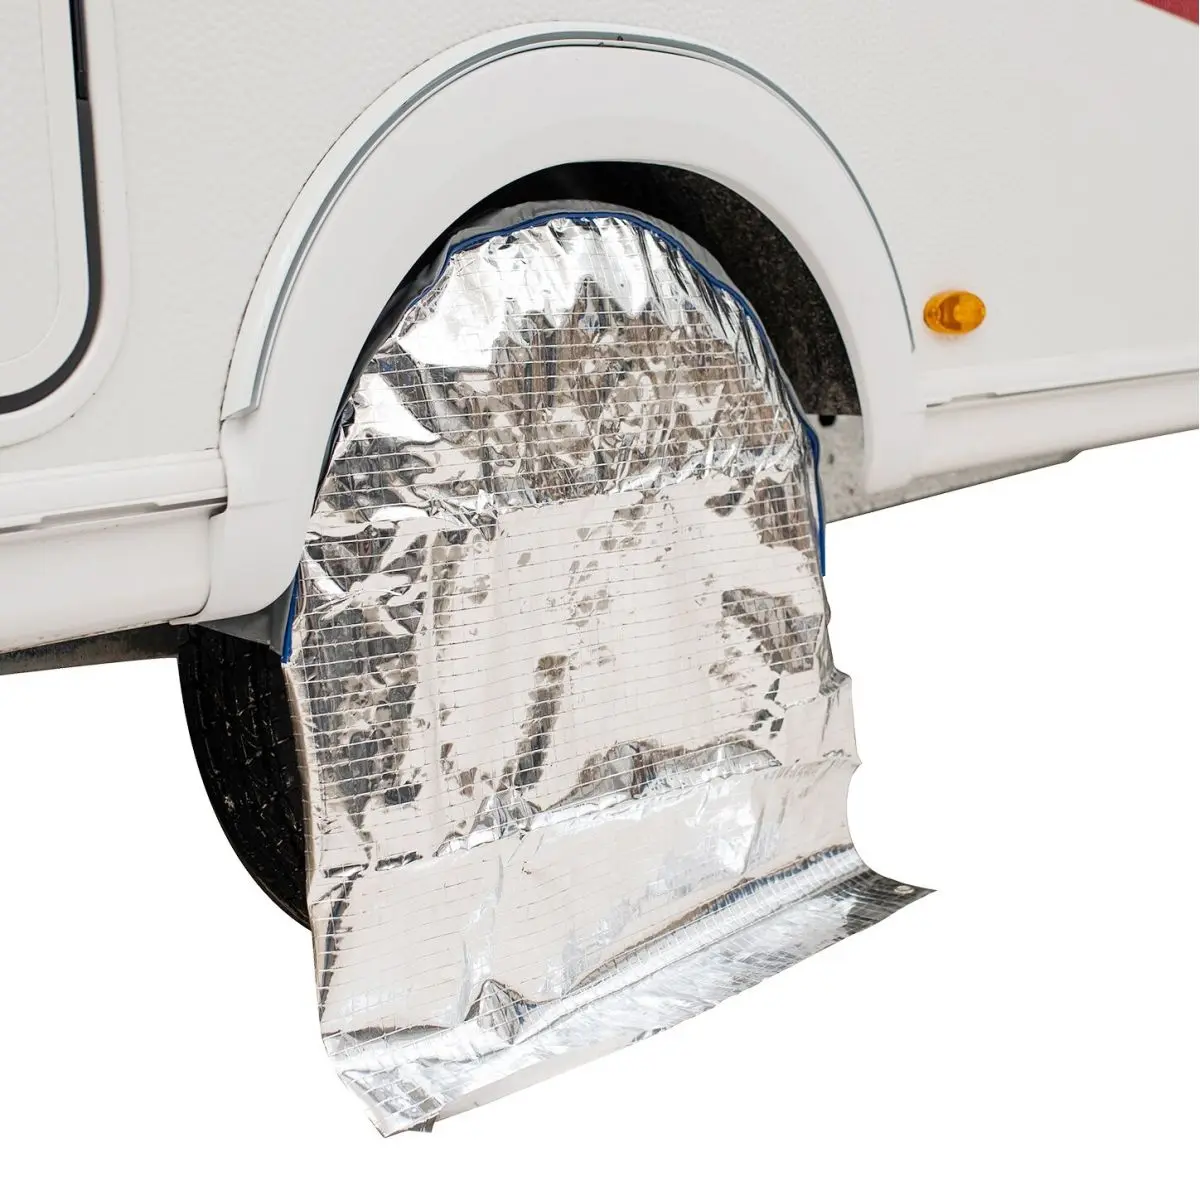 Ochranné kryty kolies s odrazom slnka pre tandemové karavany a obytné vozidlá